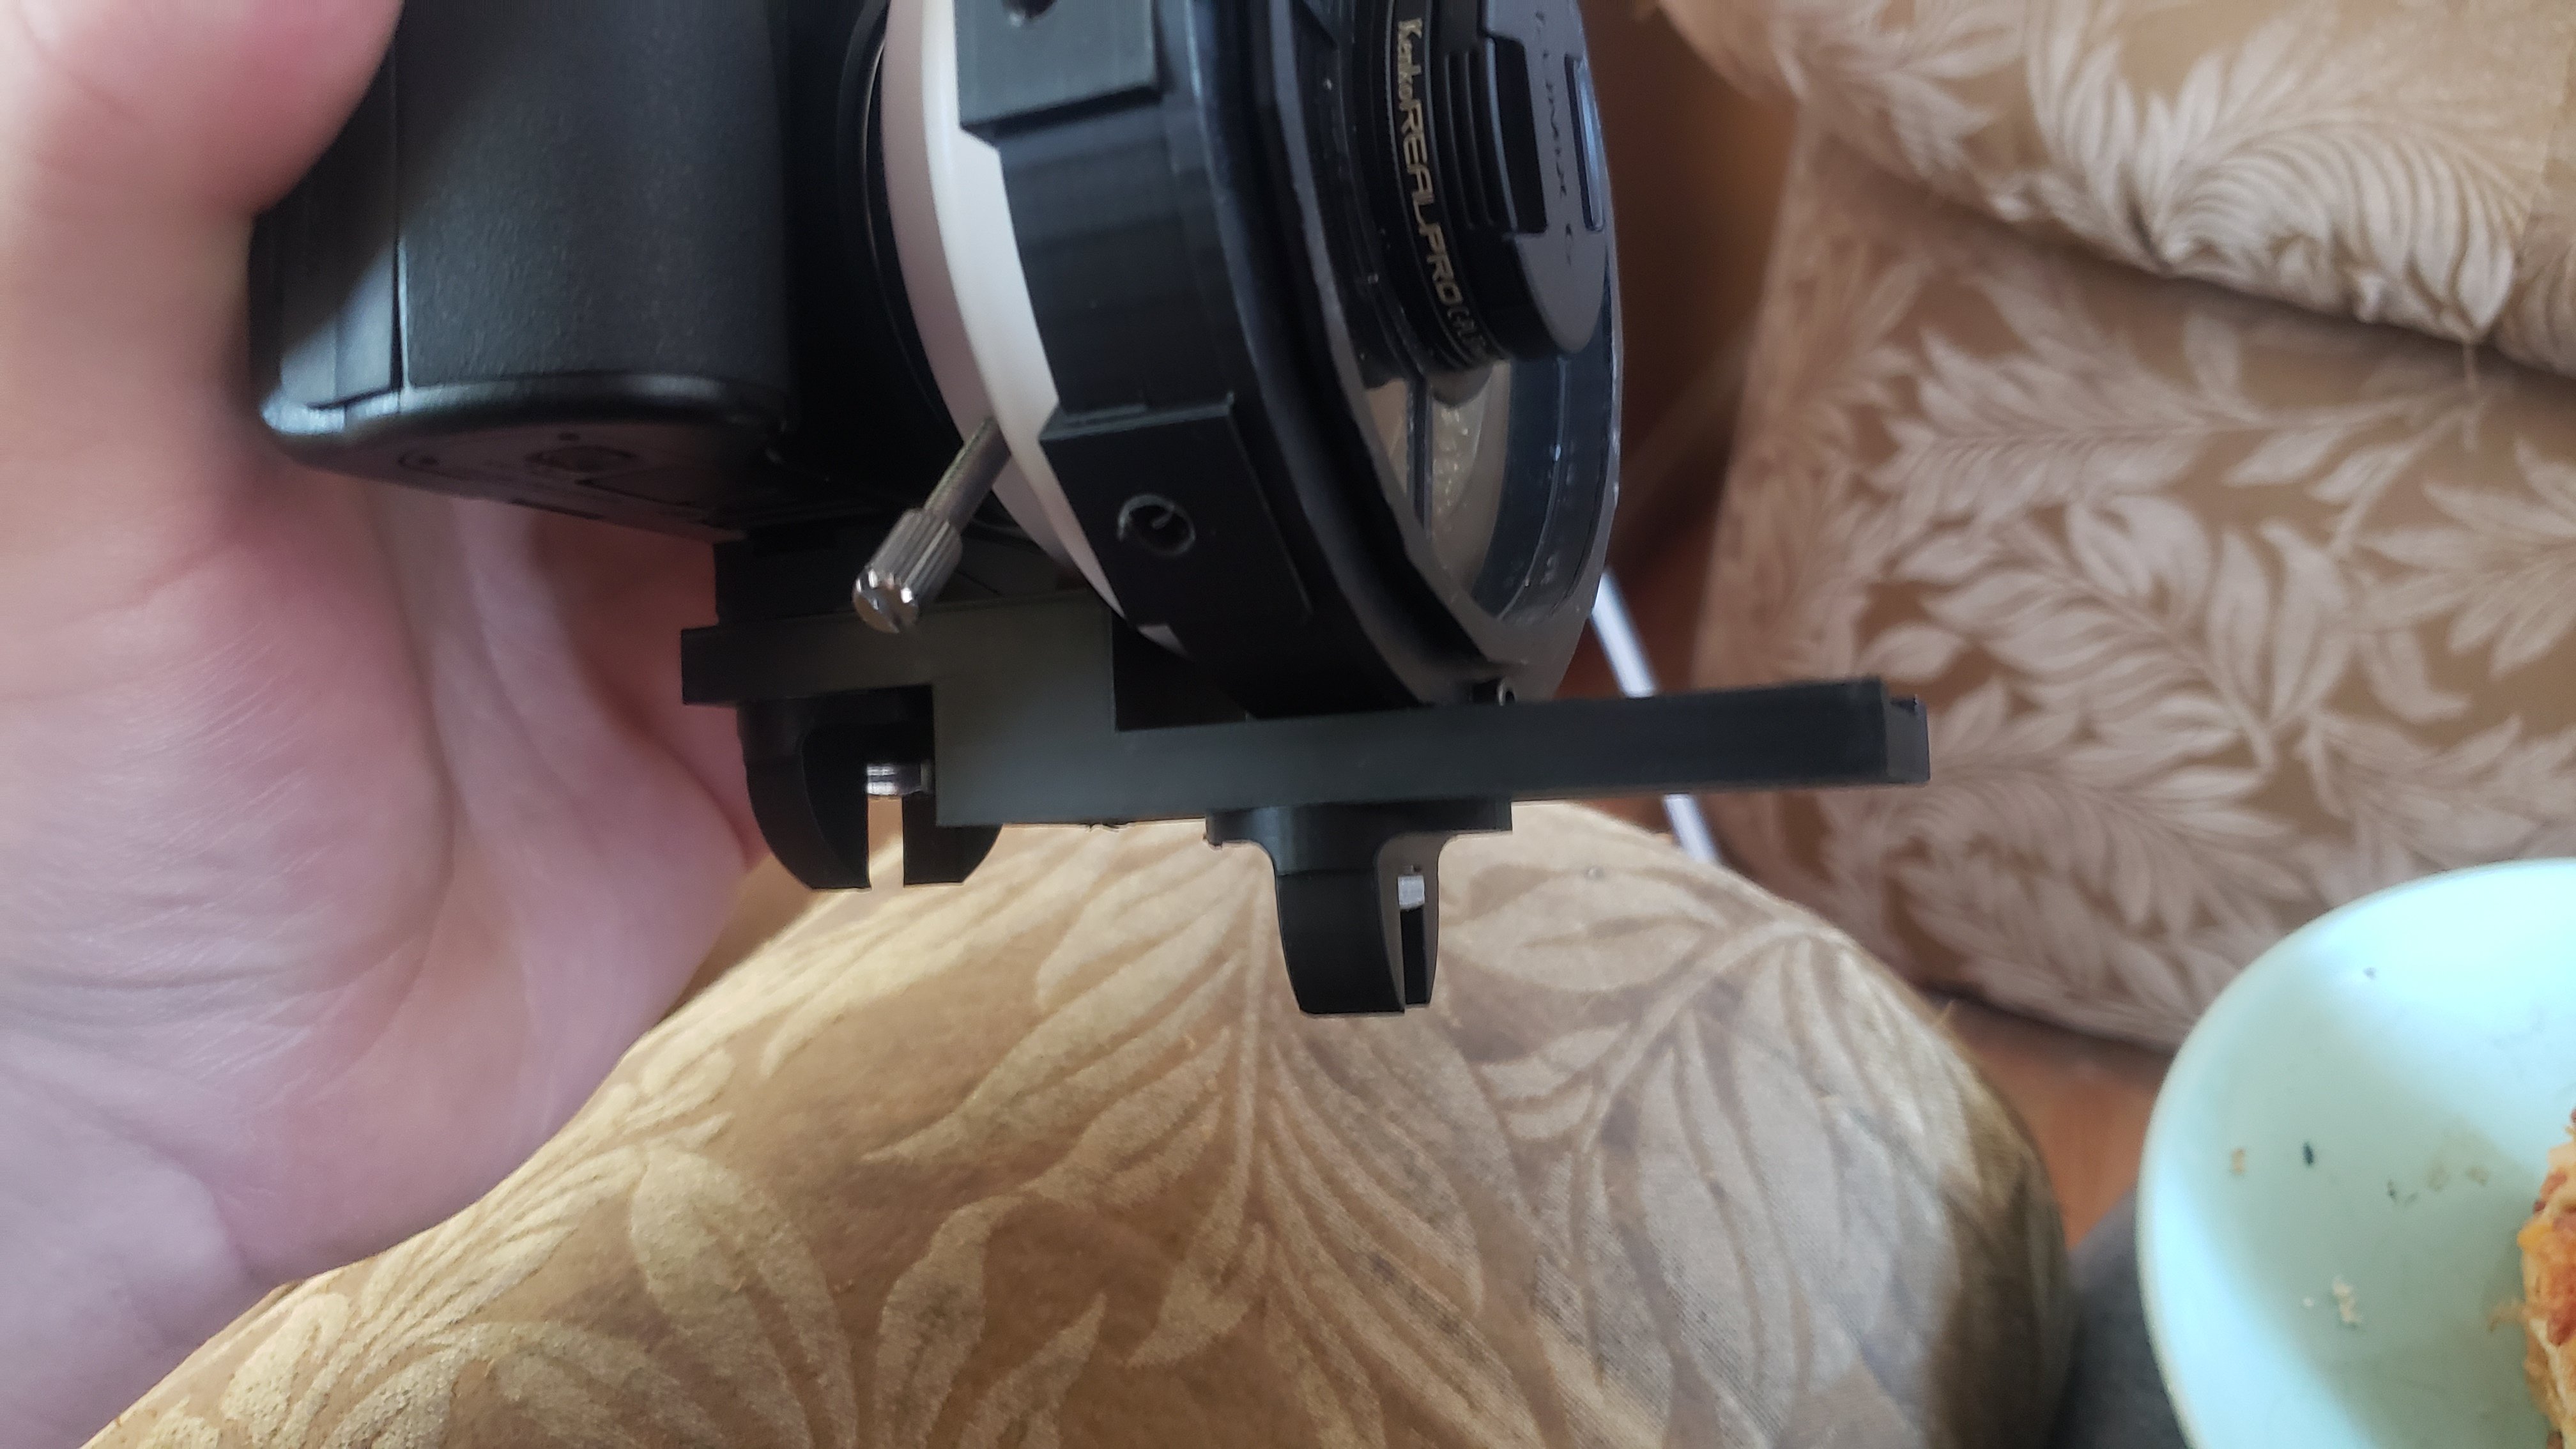 tripod mount camera accessory rail